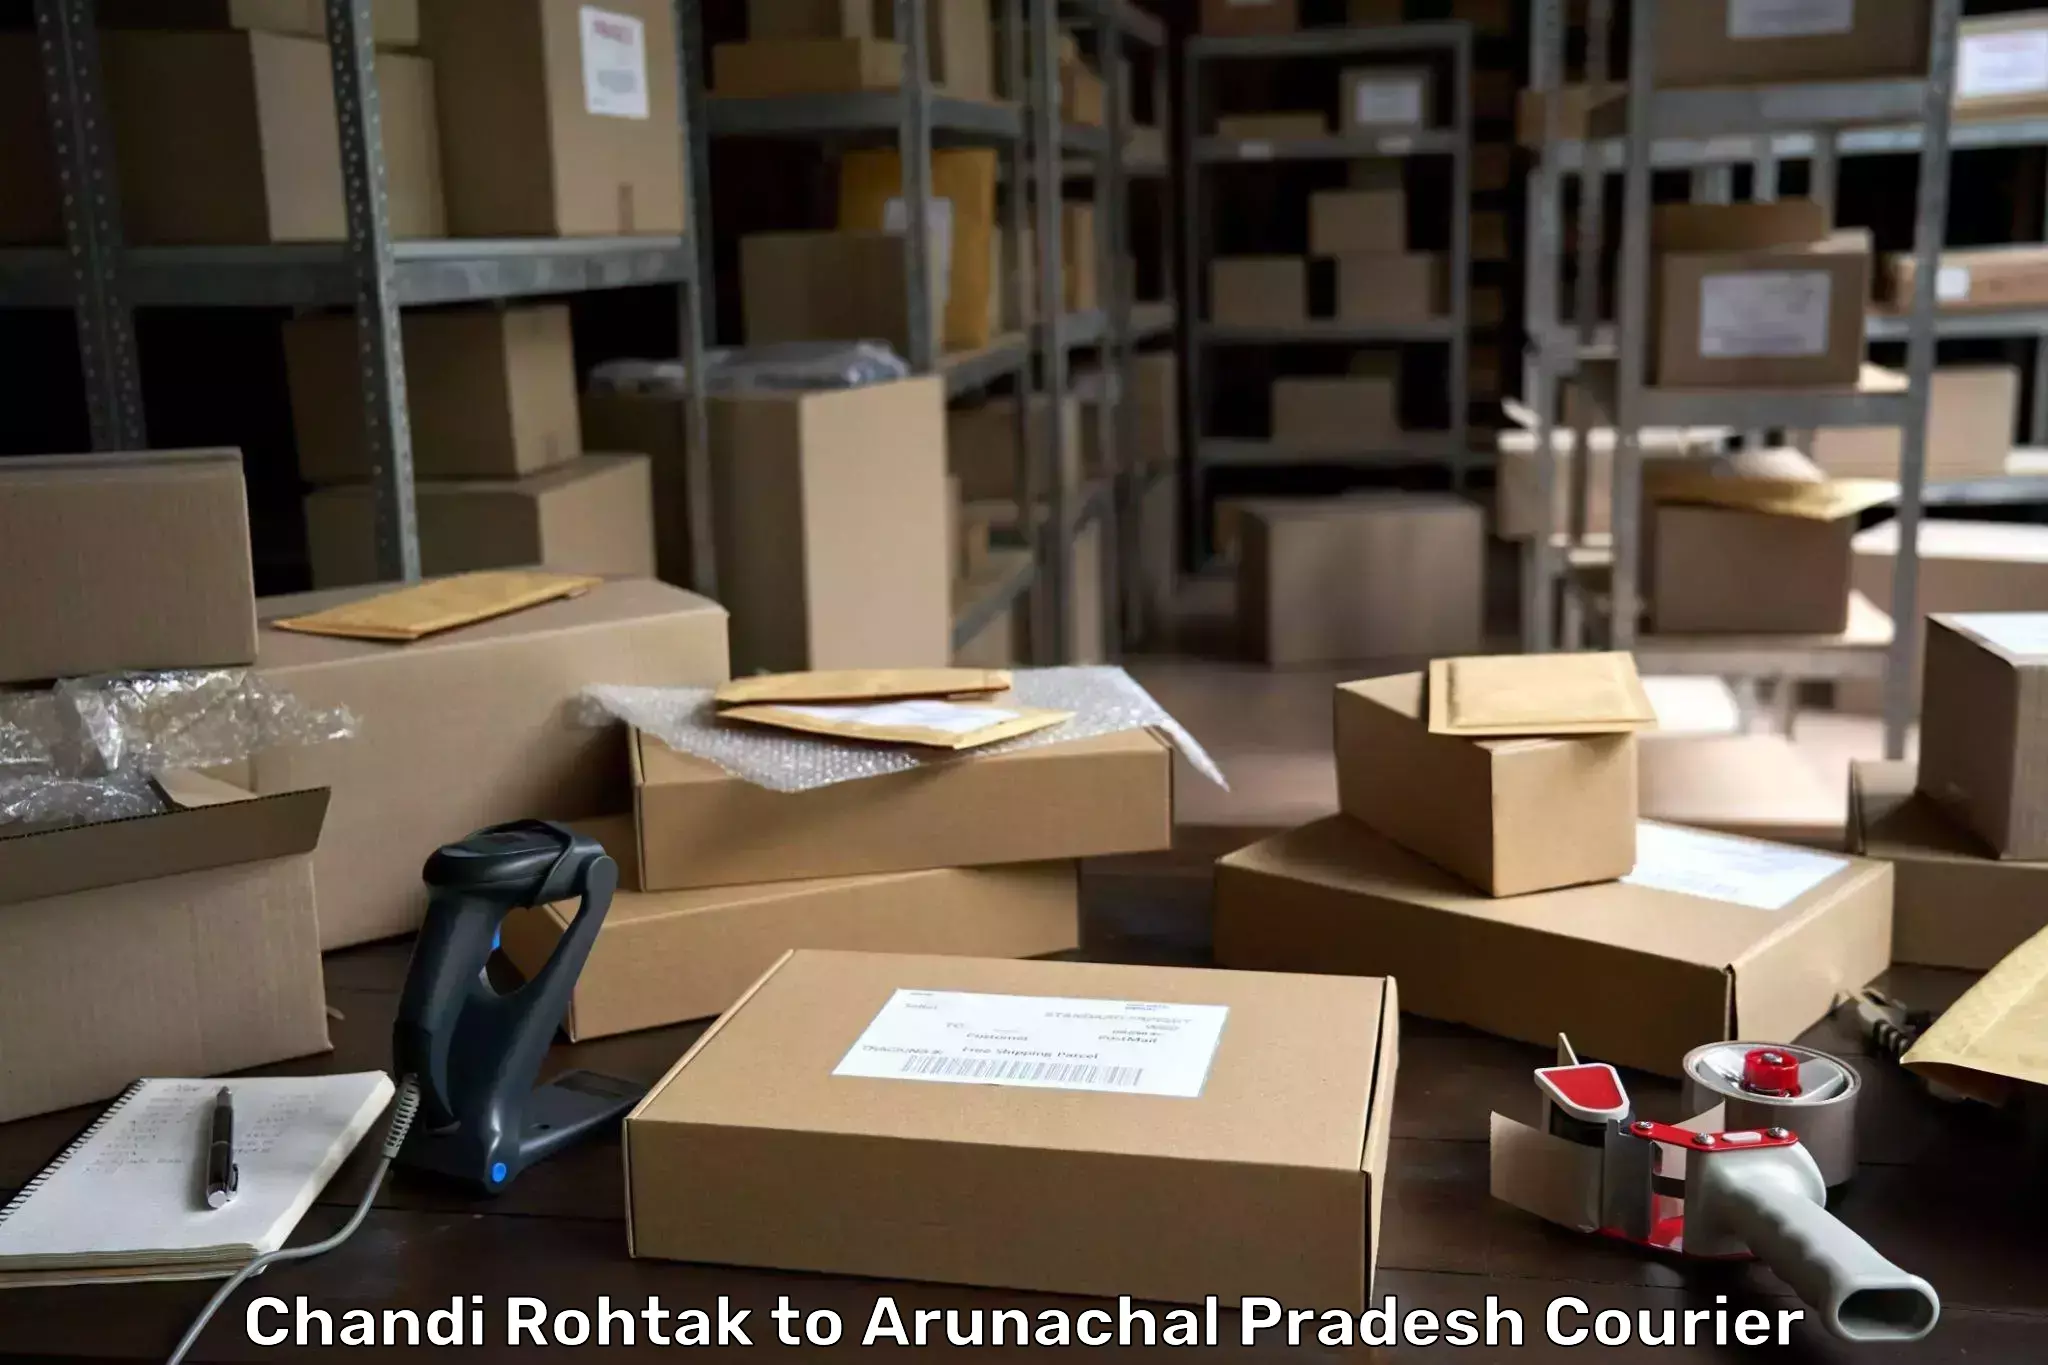 Courier app Chandi Rohtak to Arunachal Pradesh